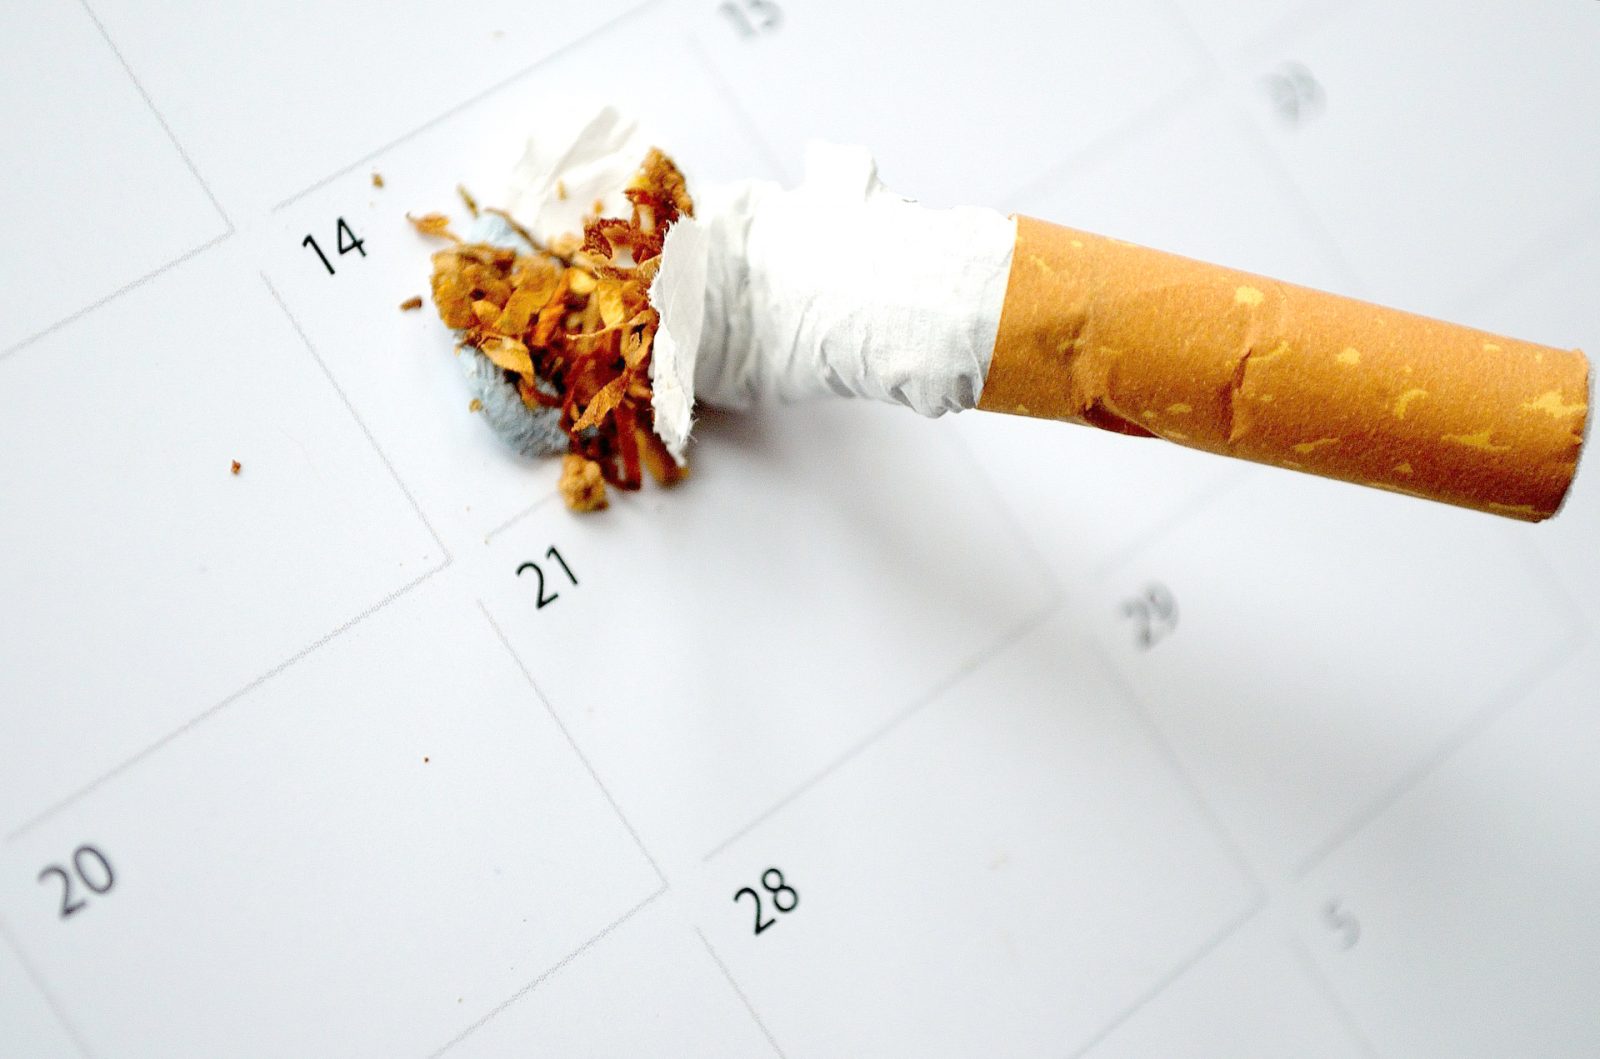 dejar de fumar ayuda a prevenir el ictus